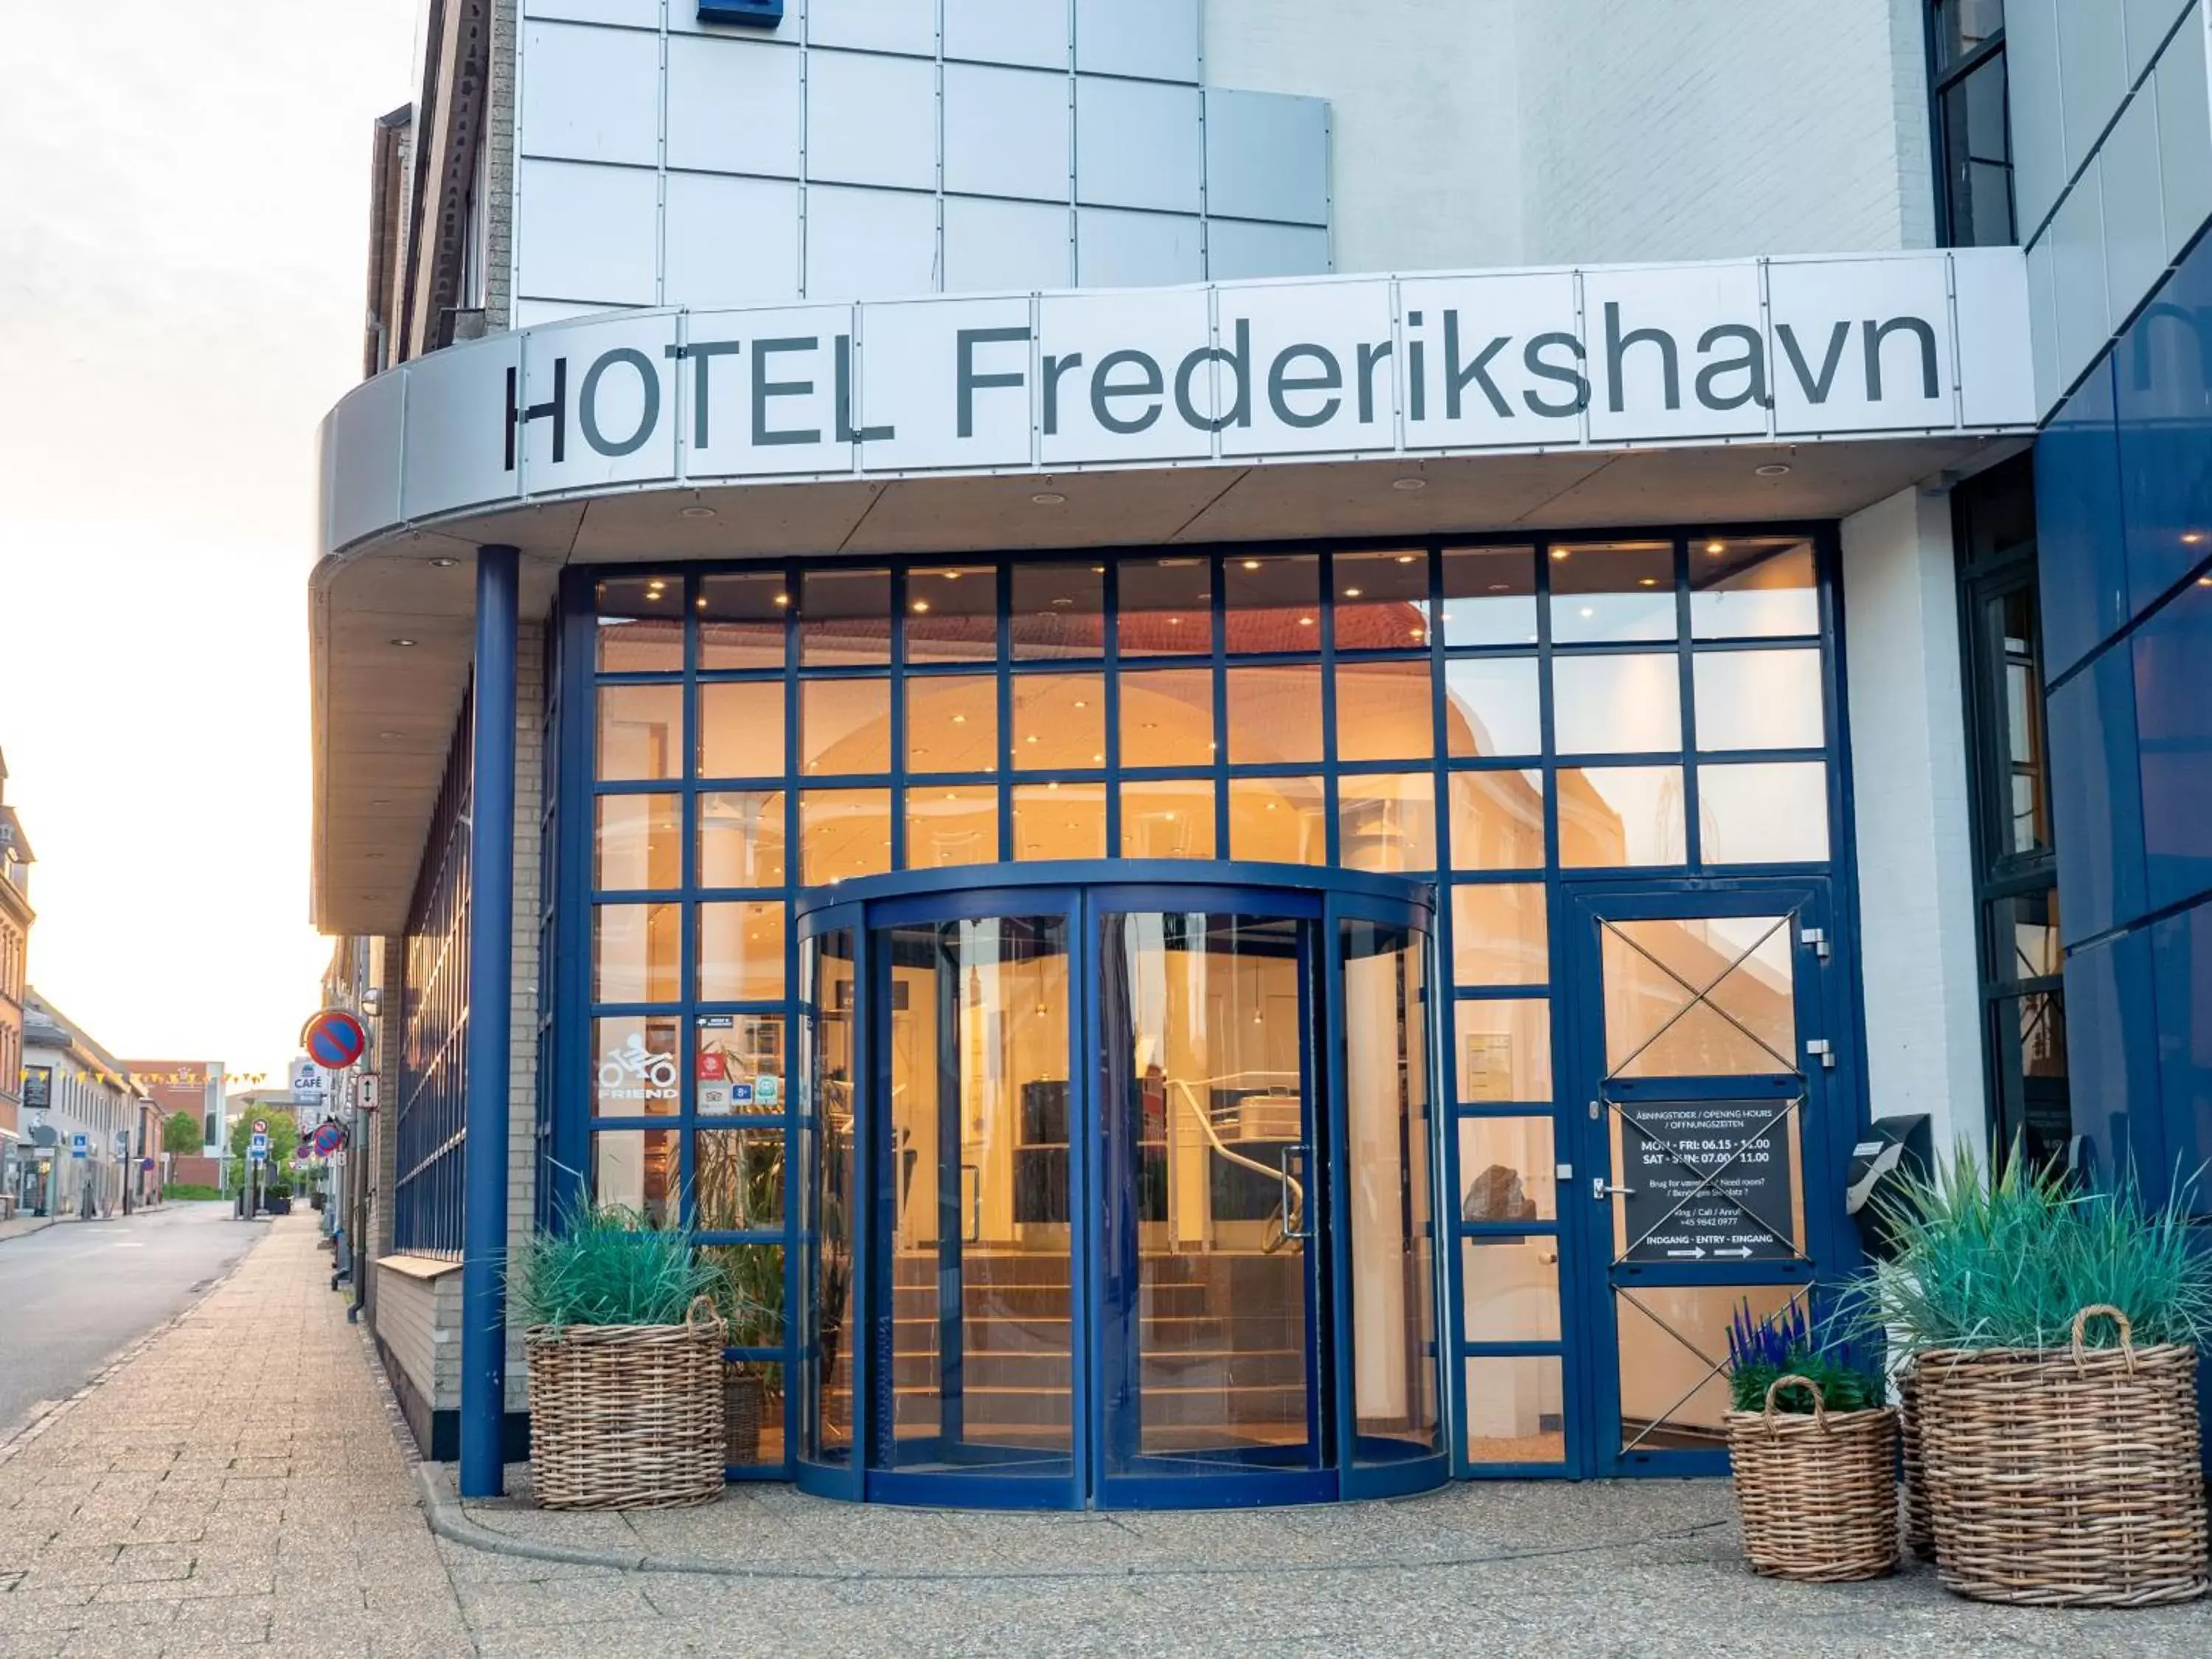 Property building in Hotel Frederikshavn